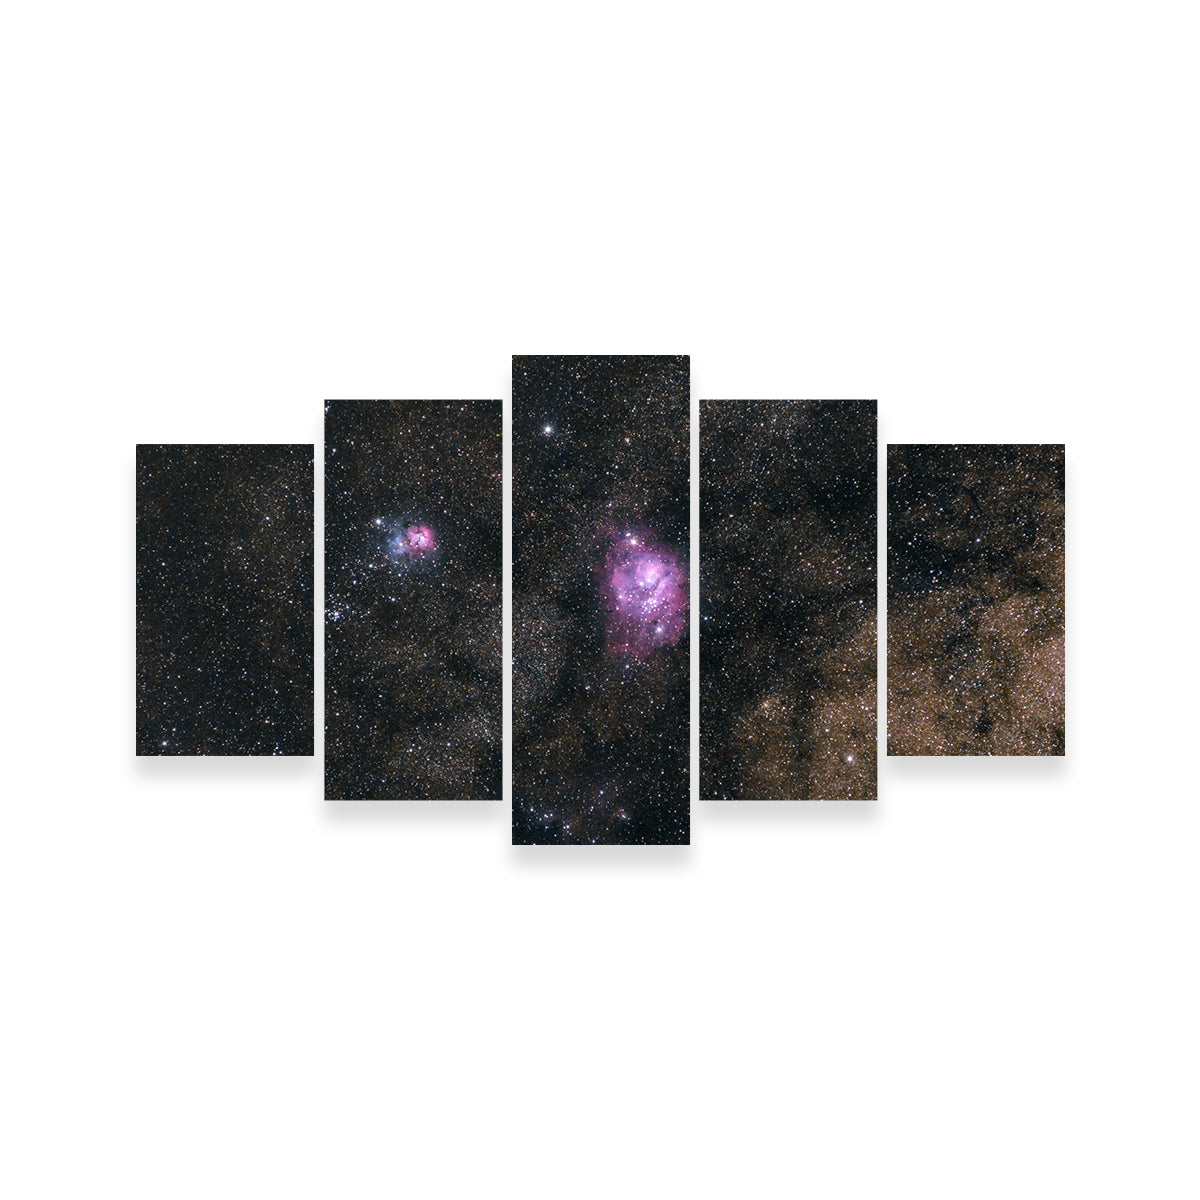 Lagoon and Trifid Nebula